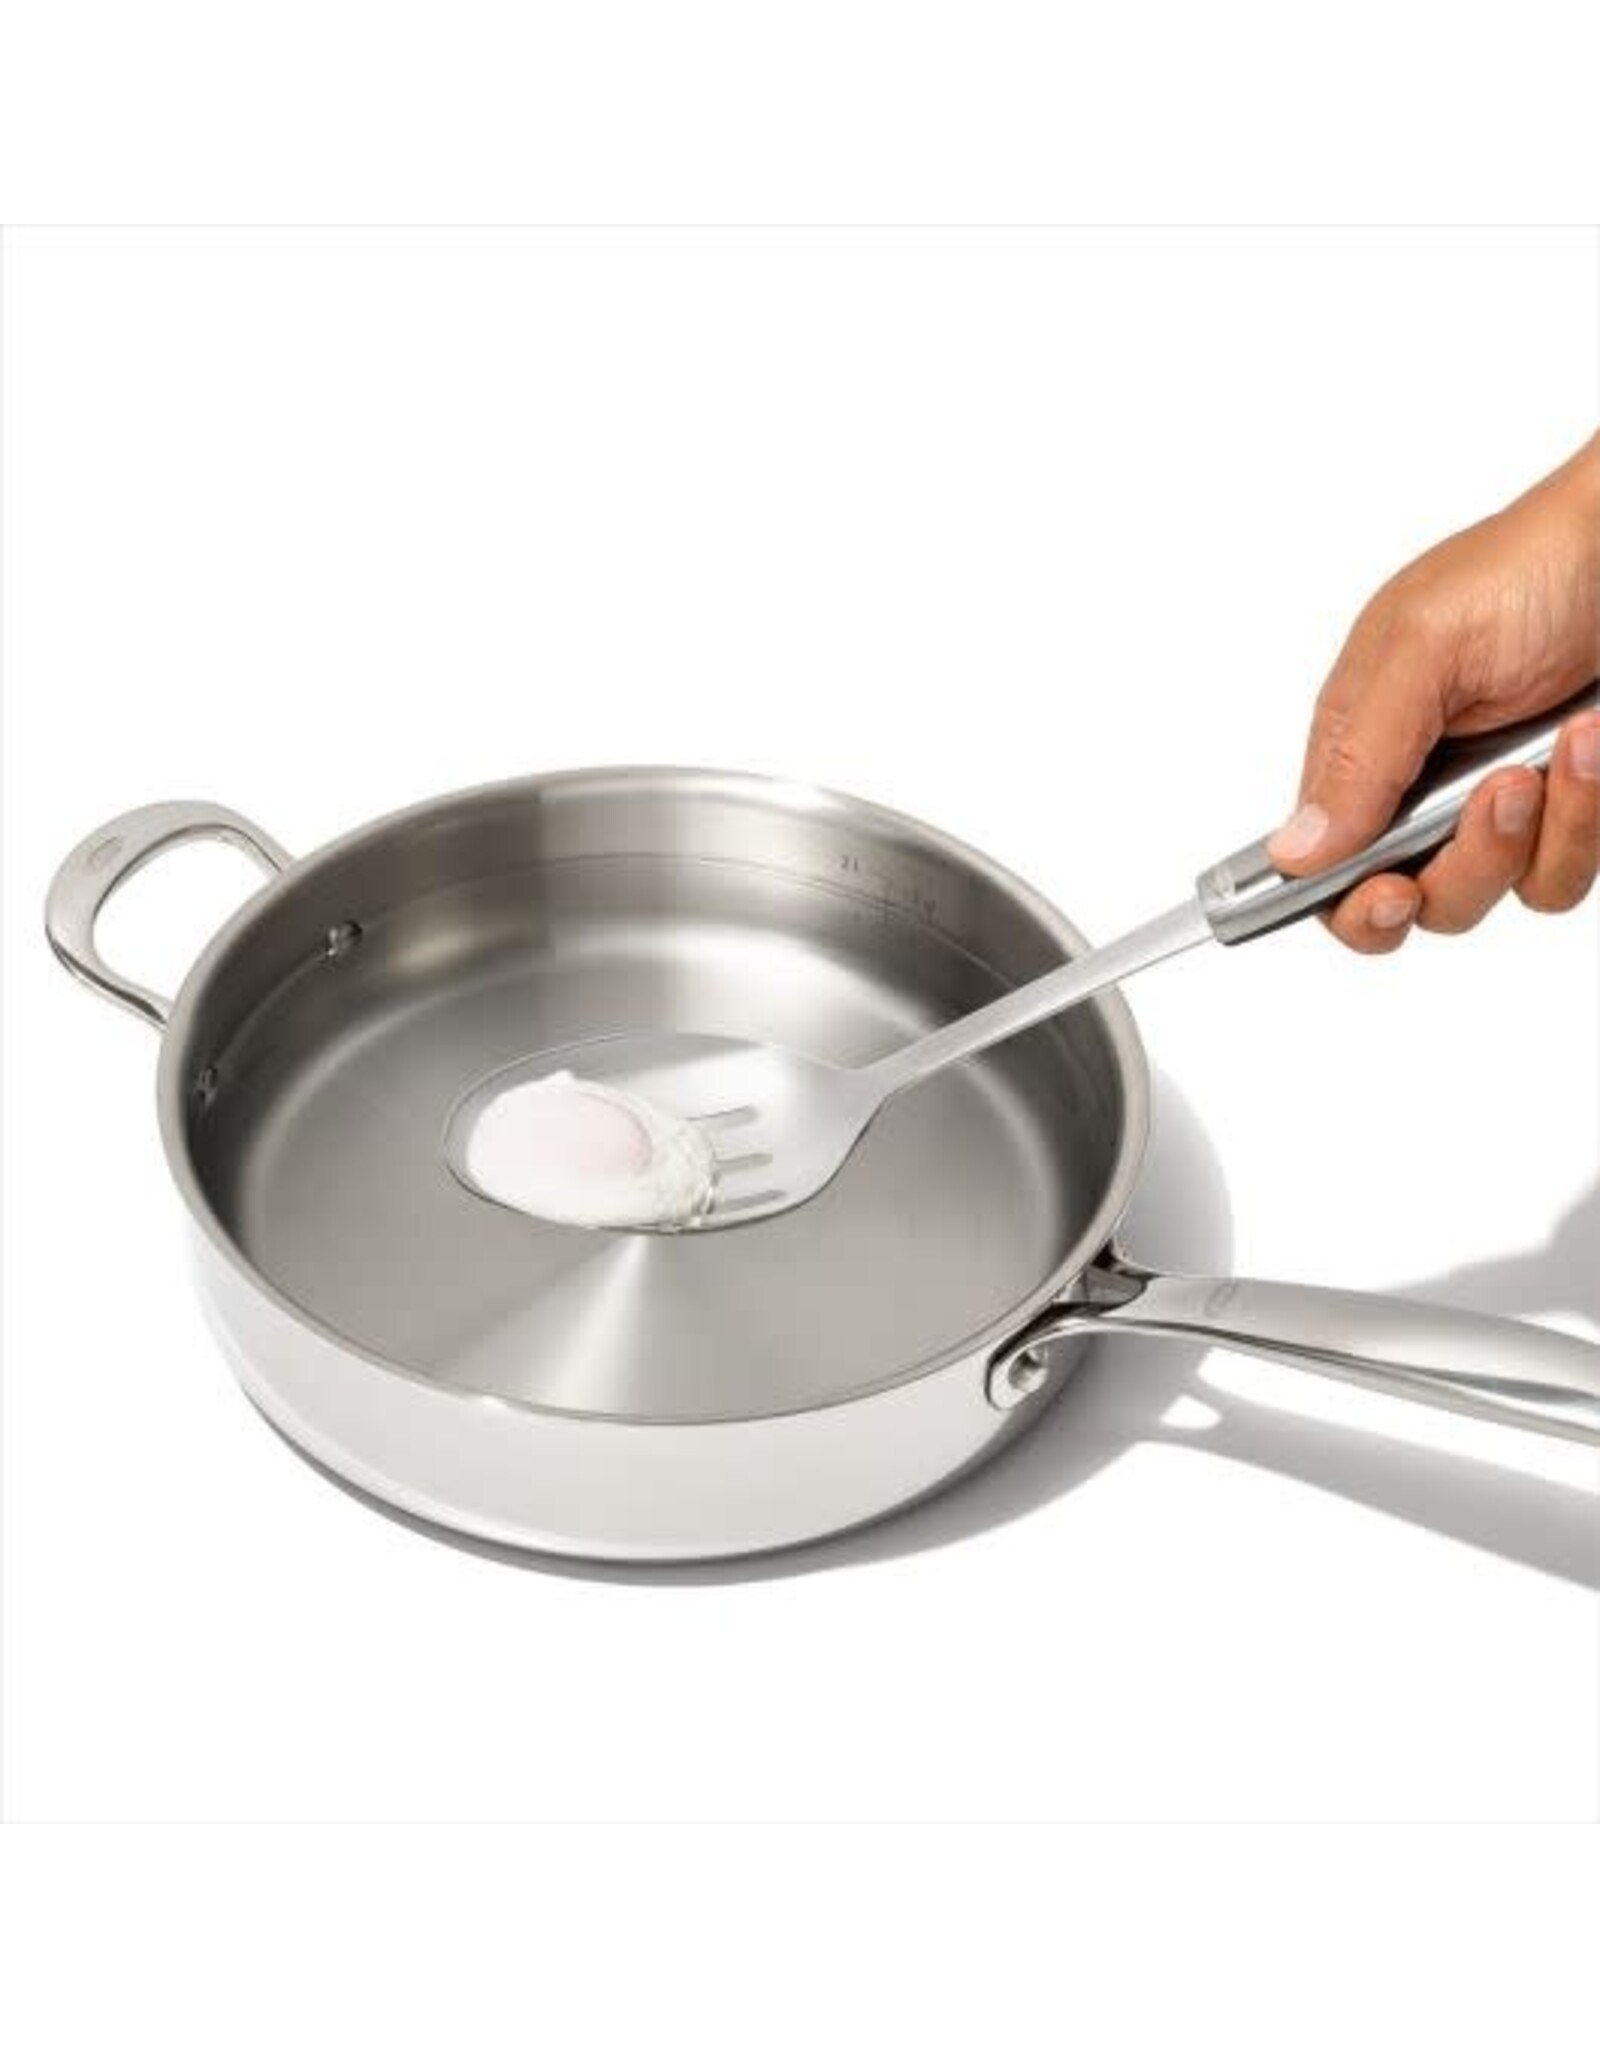 https://cdn.shoplightspeed.com/shops/635781/files/56590844/1600x2048x2/oxo-oxo-steel-slotted-cooking-spoon.jpg